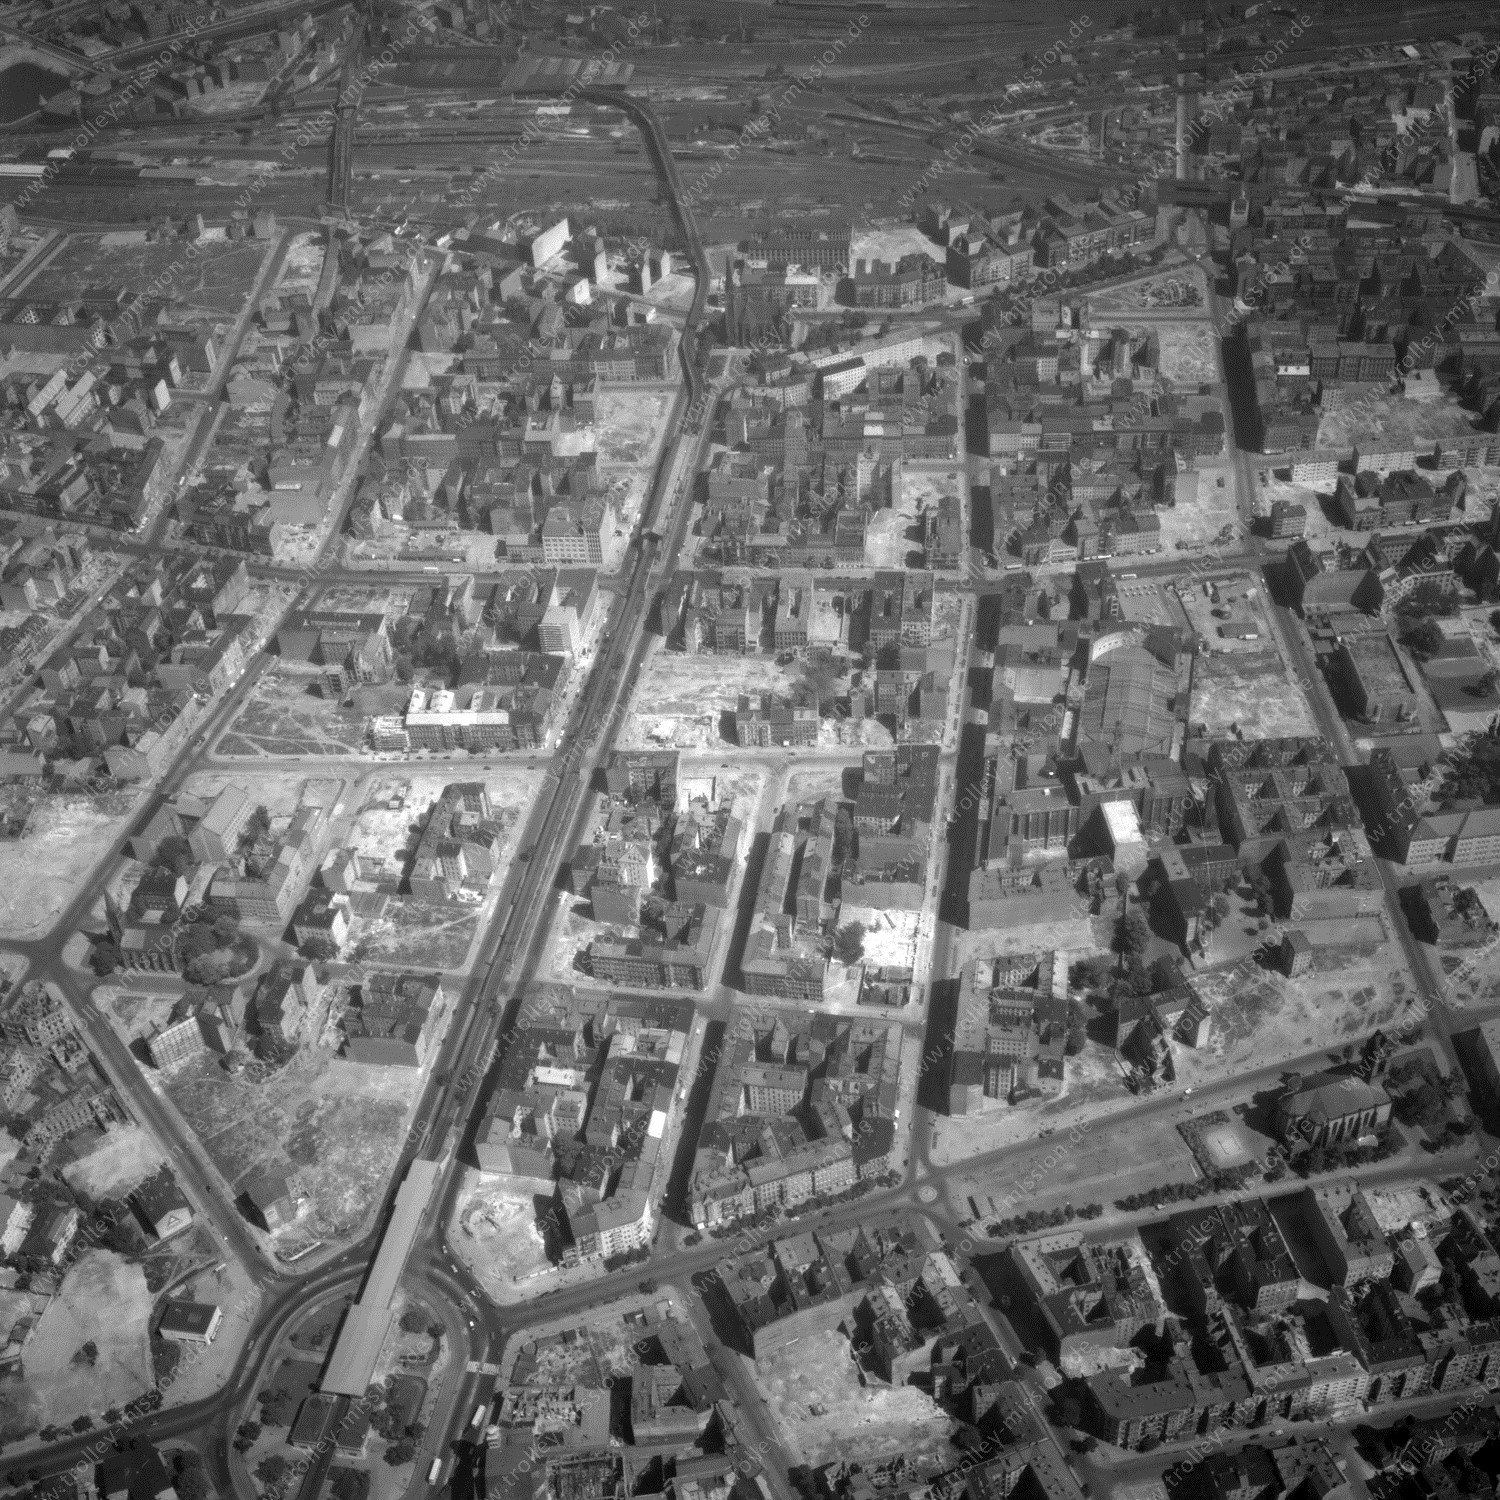 Alte Fotos und Luftbilder von Berlin - Luftbildaufnahme Nr. 06 - Historische Luftaufnahmen von West-Berlin aus dem Jahr 1954 - Flugstrecke Golf